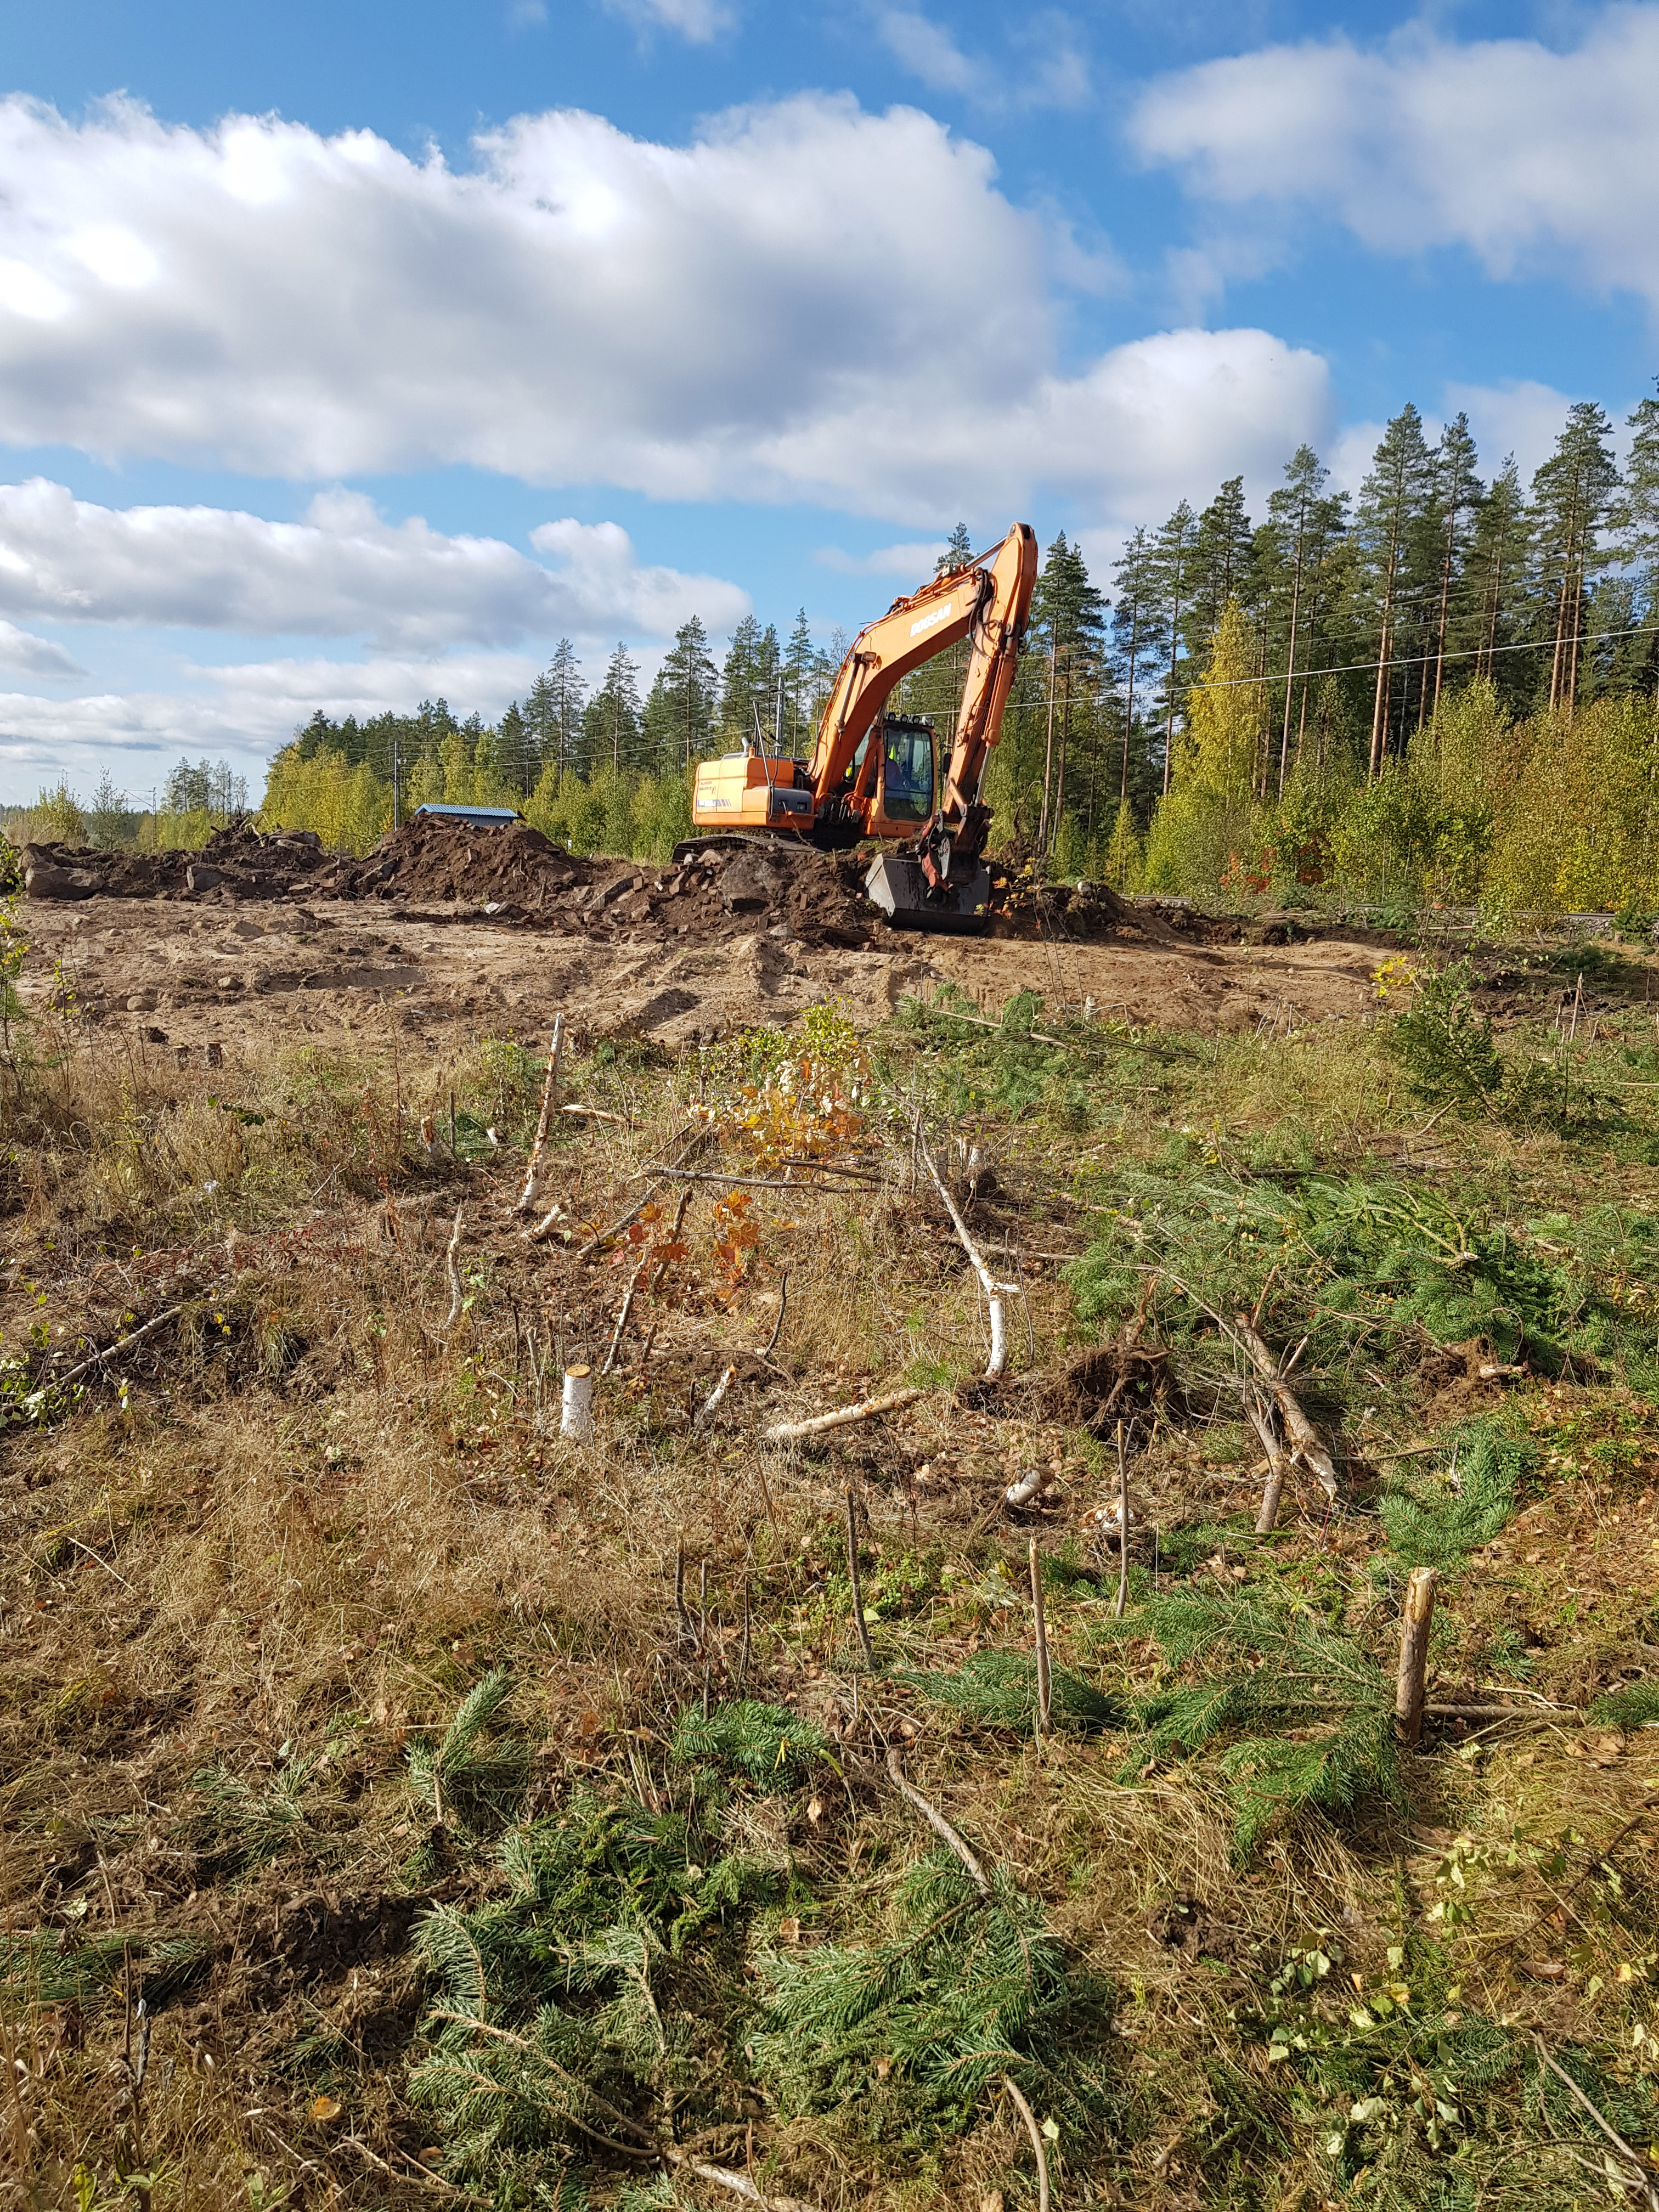 Joutseno-Rauha -välin rakentaminen käynnistyi syyskuussa 2019 puunpoistolla ja työmaateiden rakentamisella. (Kuva: Jussi Palo).